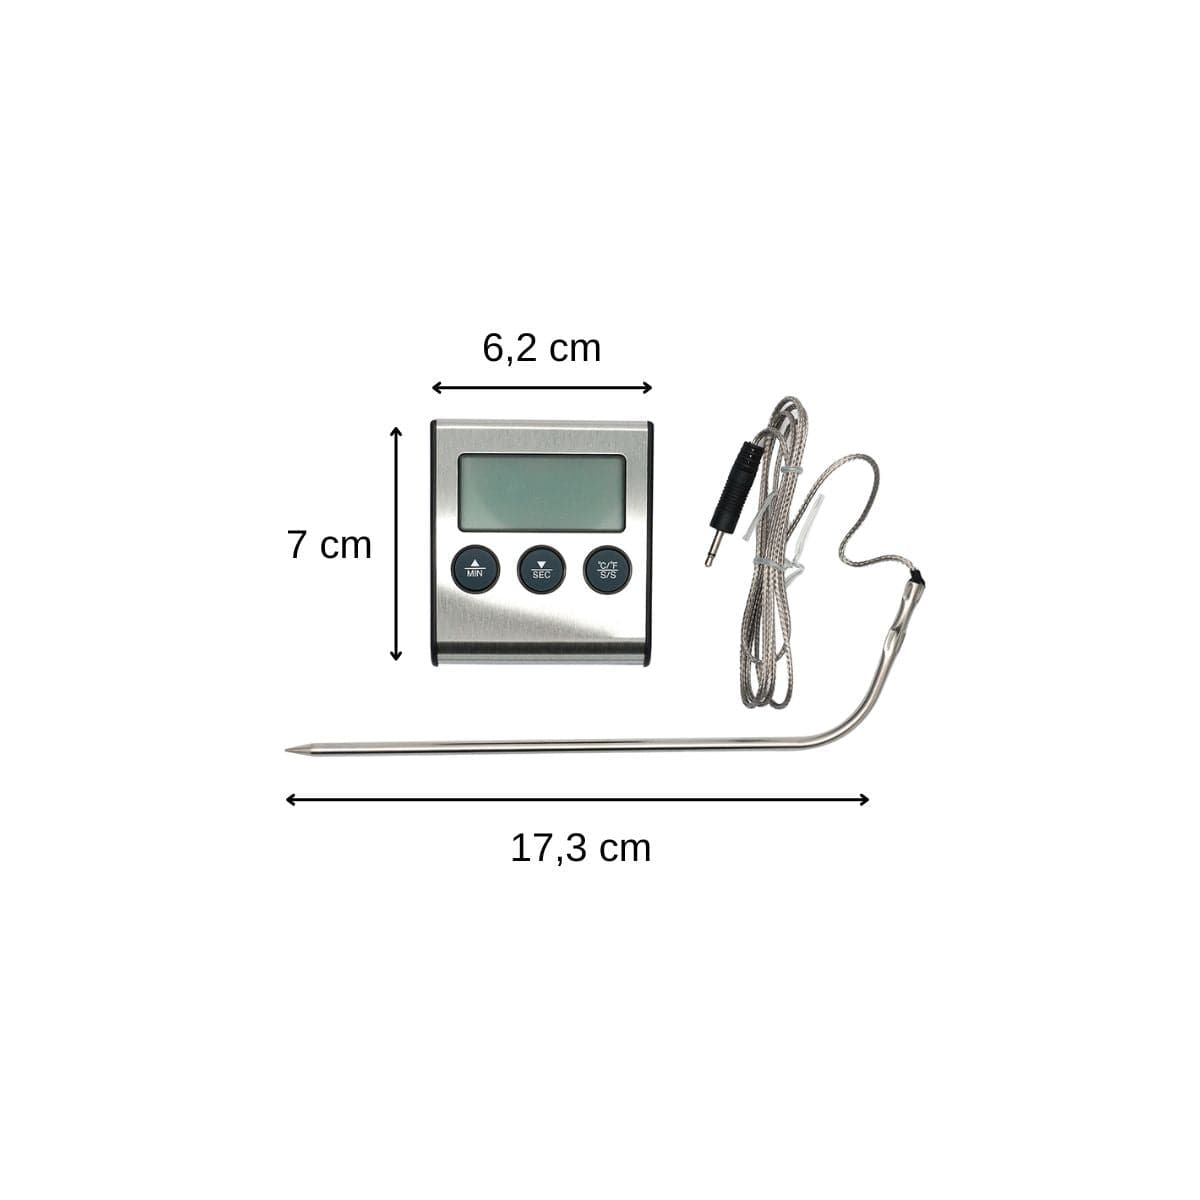 Thermomètre de Cuisson Induction